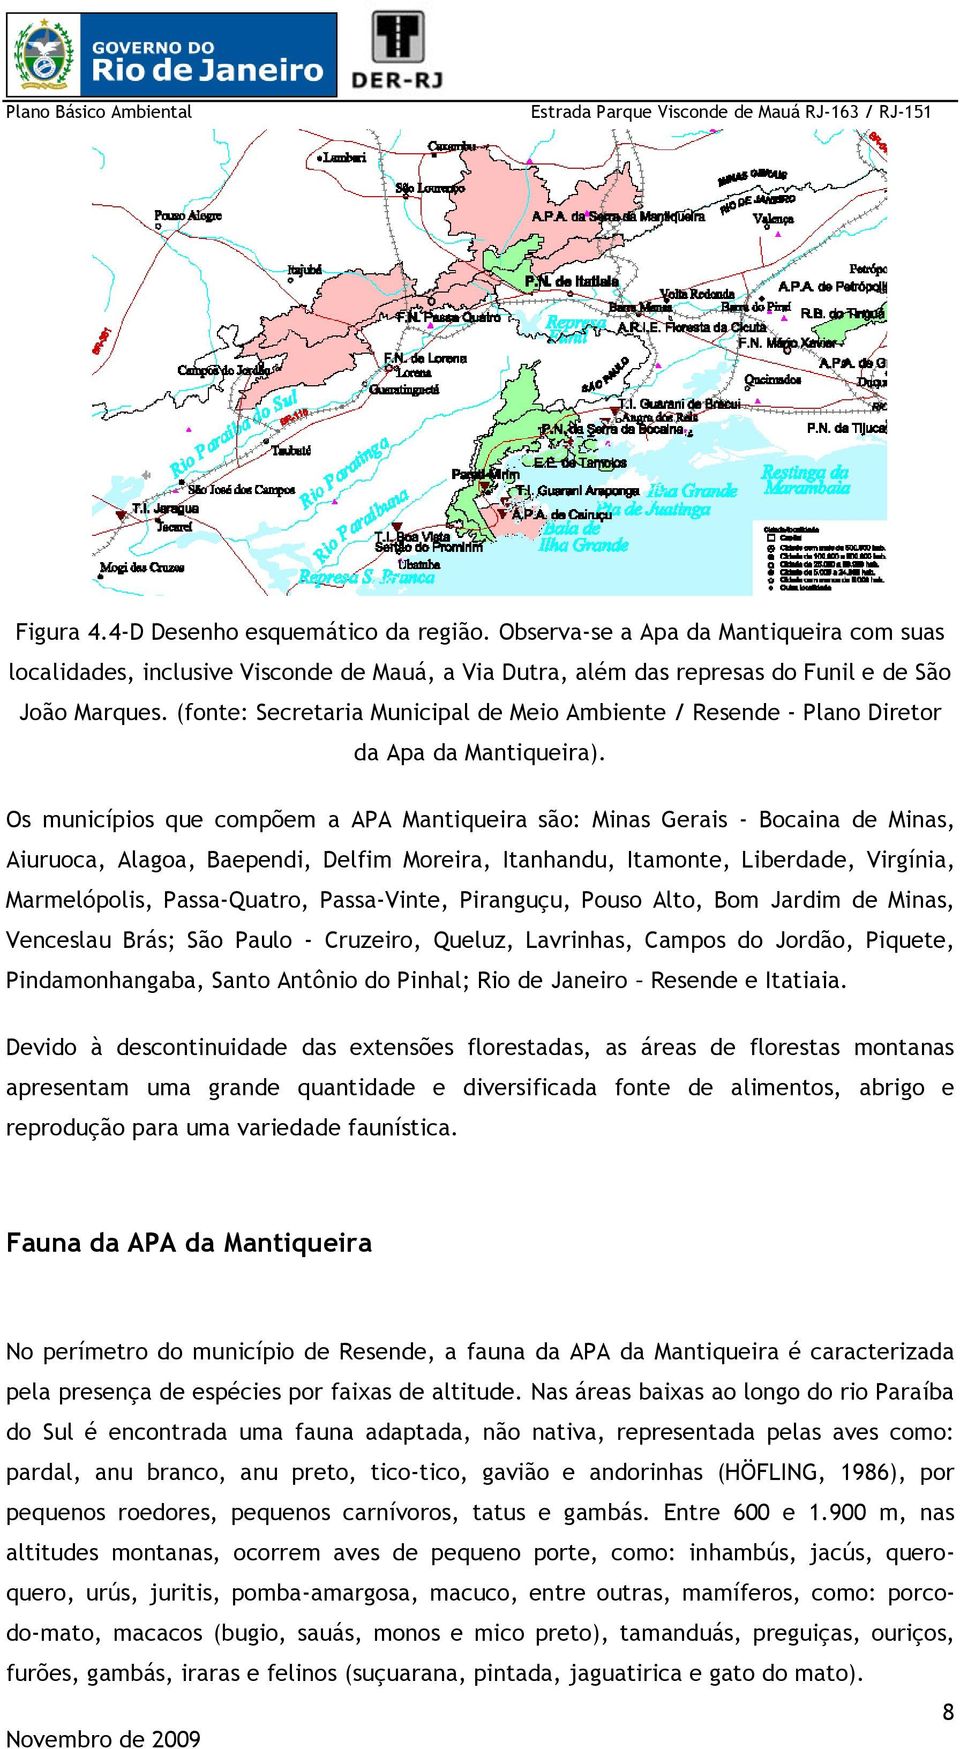 Os municípios que compõem a APA Mantiqueira são: Minas Gerais - Bocaina de Minas, Aiuruoca, Alagoa, Baependi, Delfim Moreira, Itanhandu, Itamonte, Liberdade, Virgínia, Marmelópolis, Passa-Quatro,